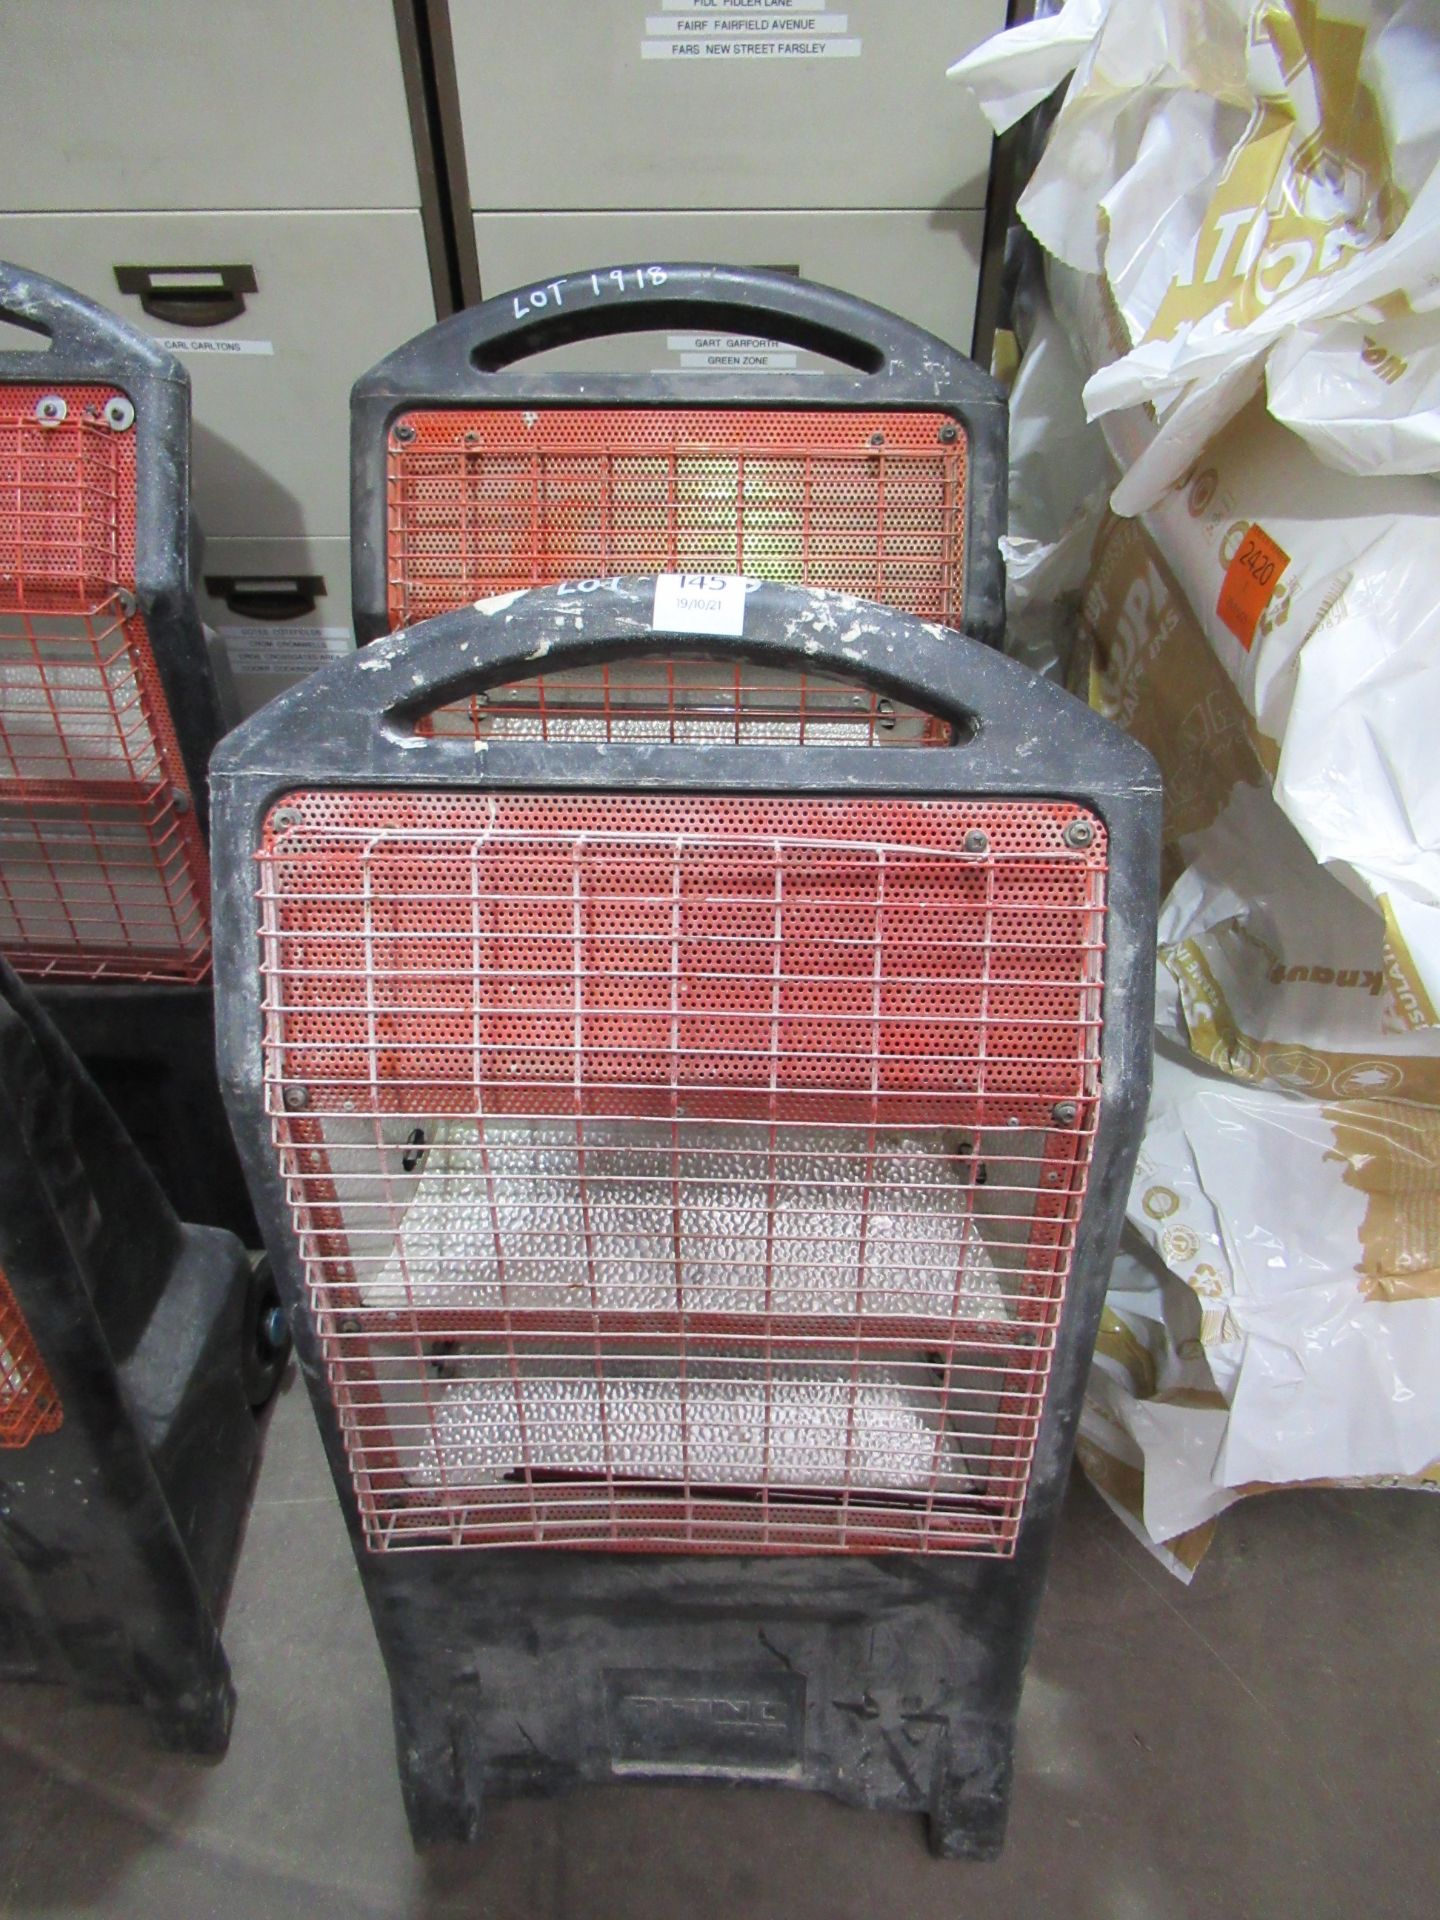 2x Rhino TQ3 110v mobile heaters